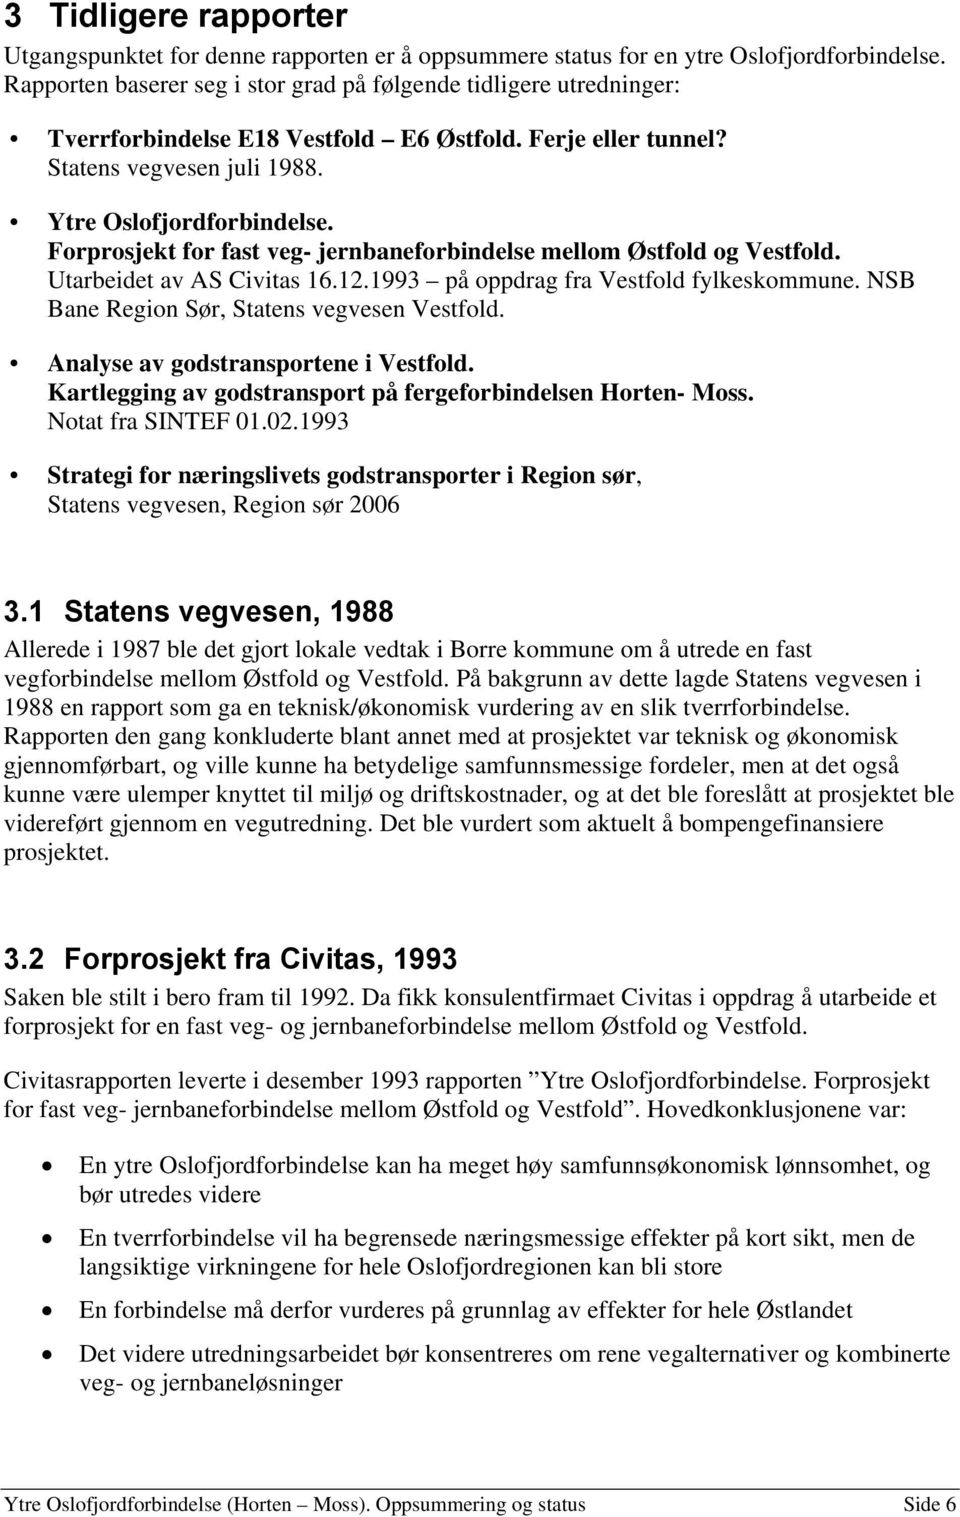 Forprosjekt for fast veg- jernbaneforbindelse mellom Østfold og Vestfold. Utarbeidet av AS Civitas 16.12.1993 på oppdrag fra Vestfold fylkeskommune. NSB Bane Region Sør, Statens vegvesen Vestfold.